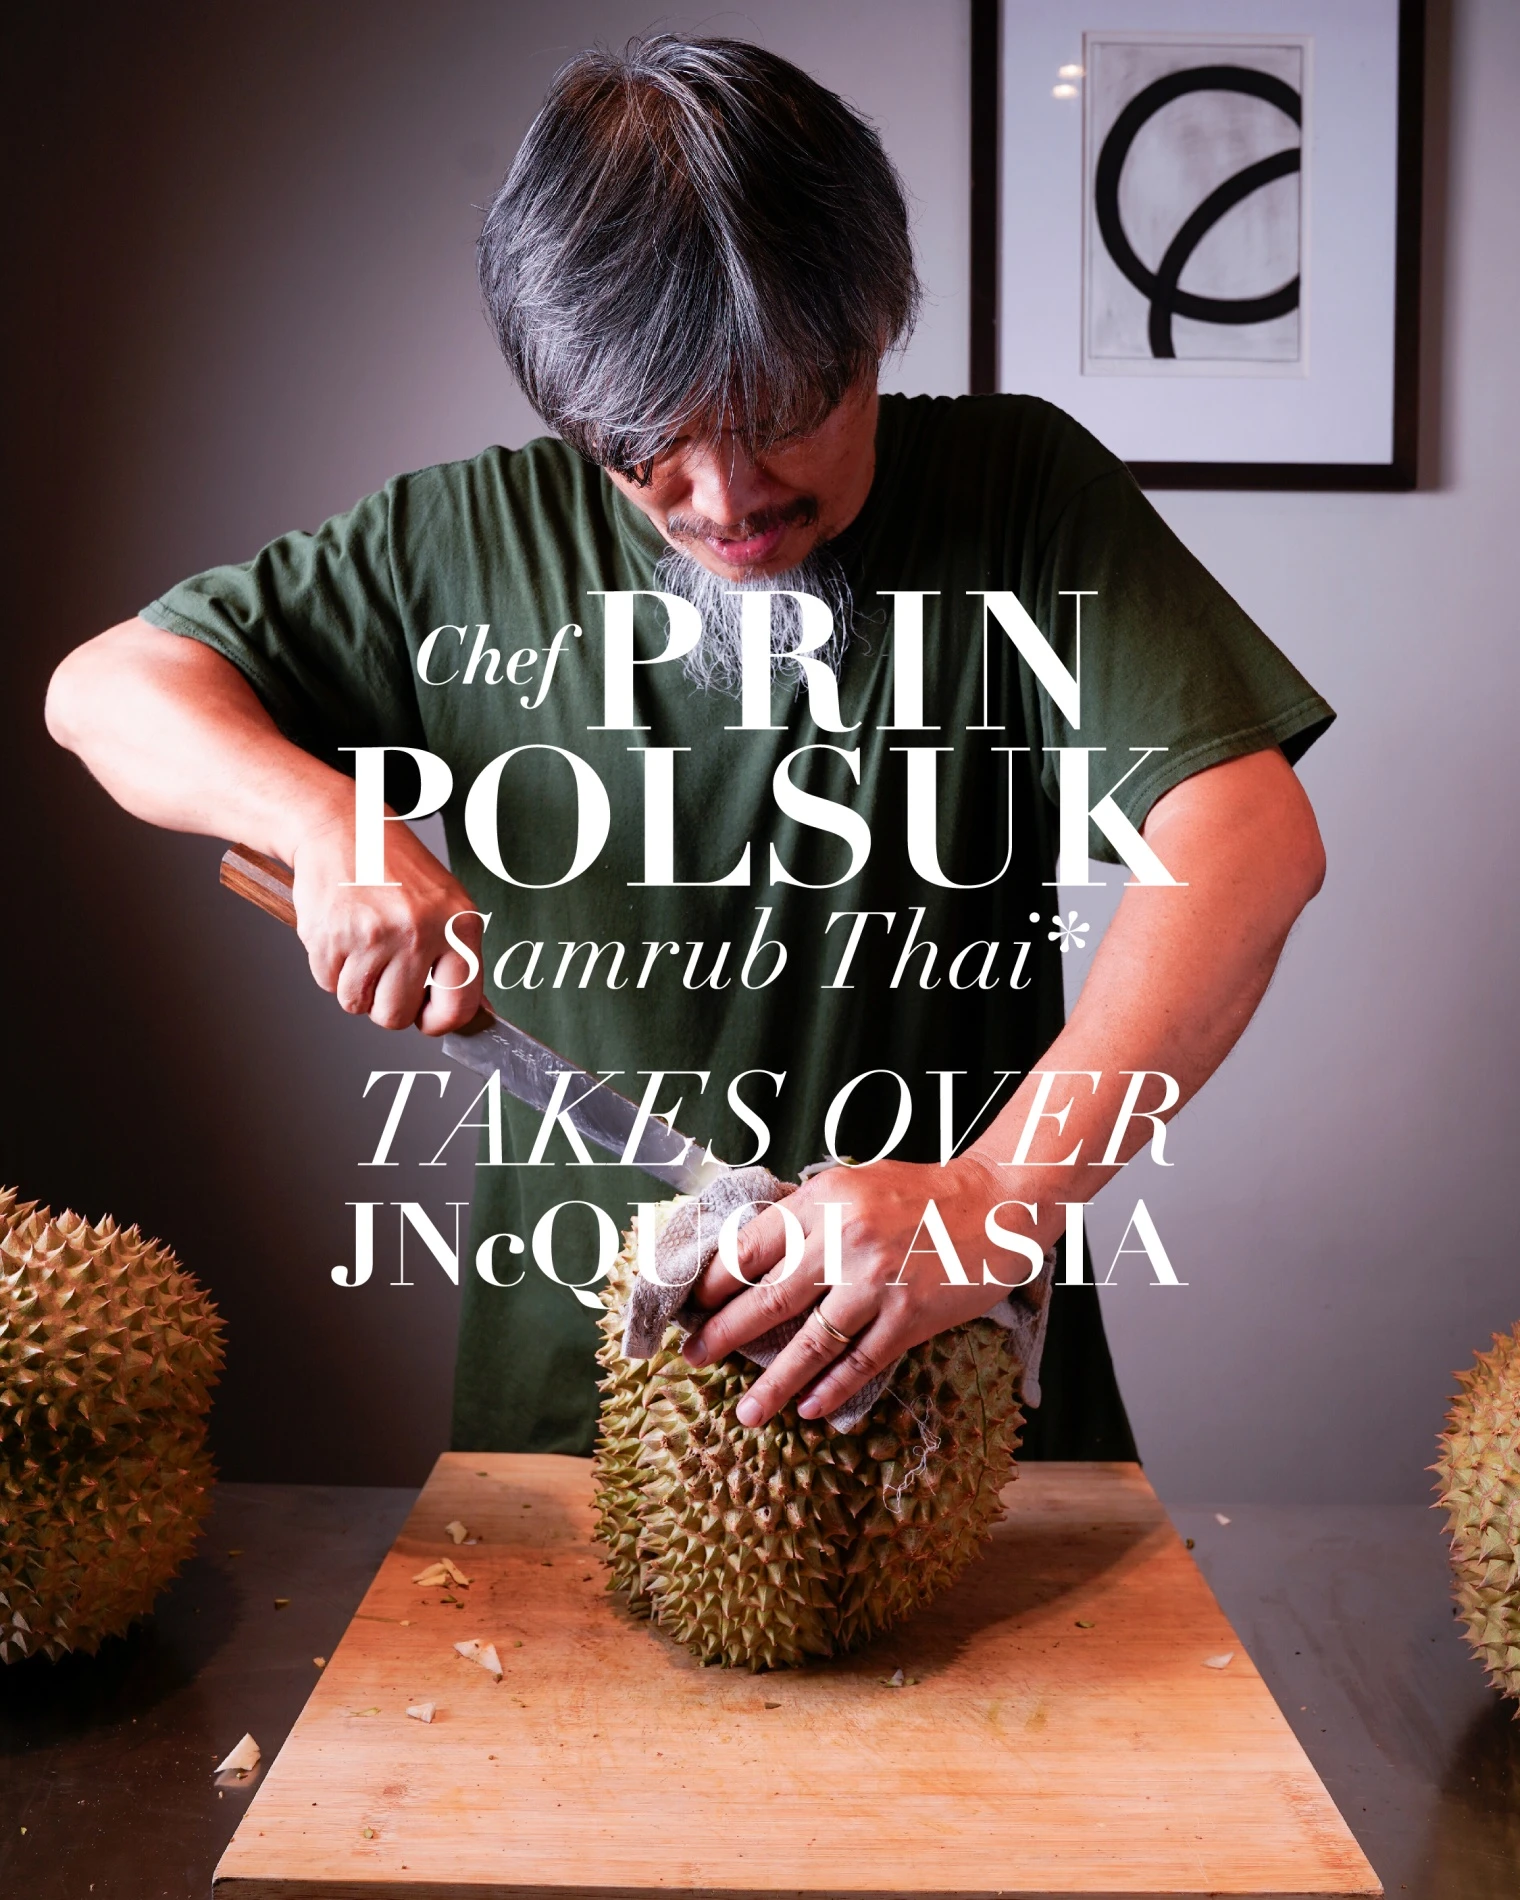 Chef Prin Polsuk Takes Over JNcQUOI Asia